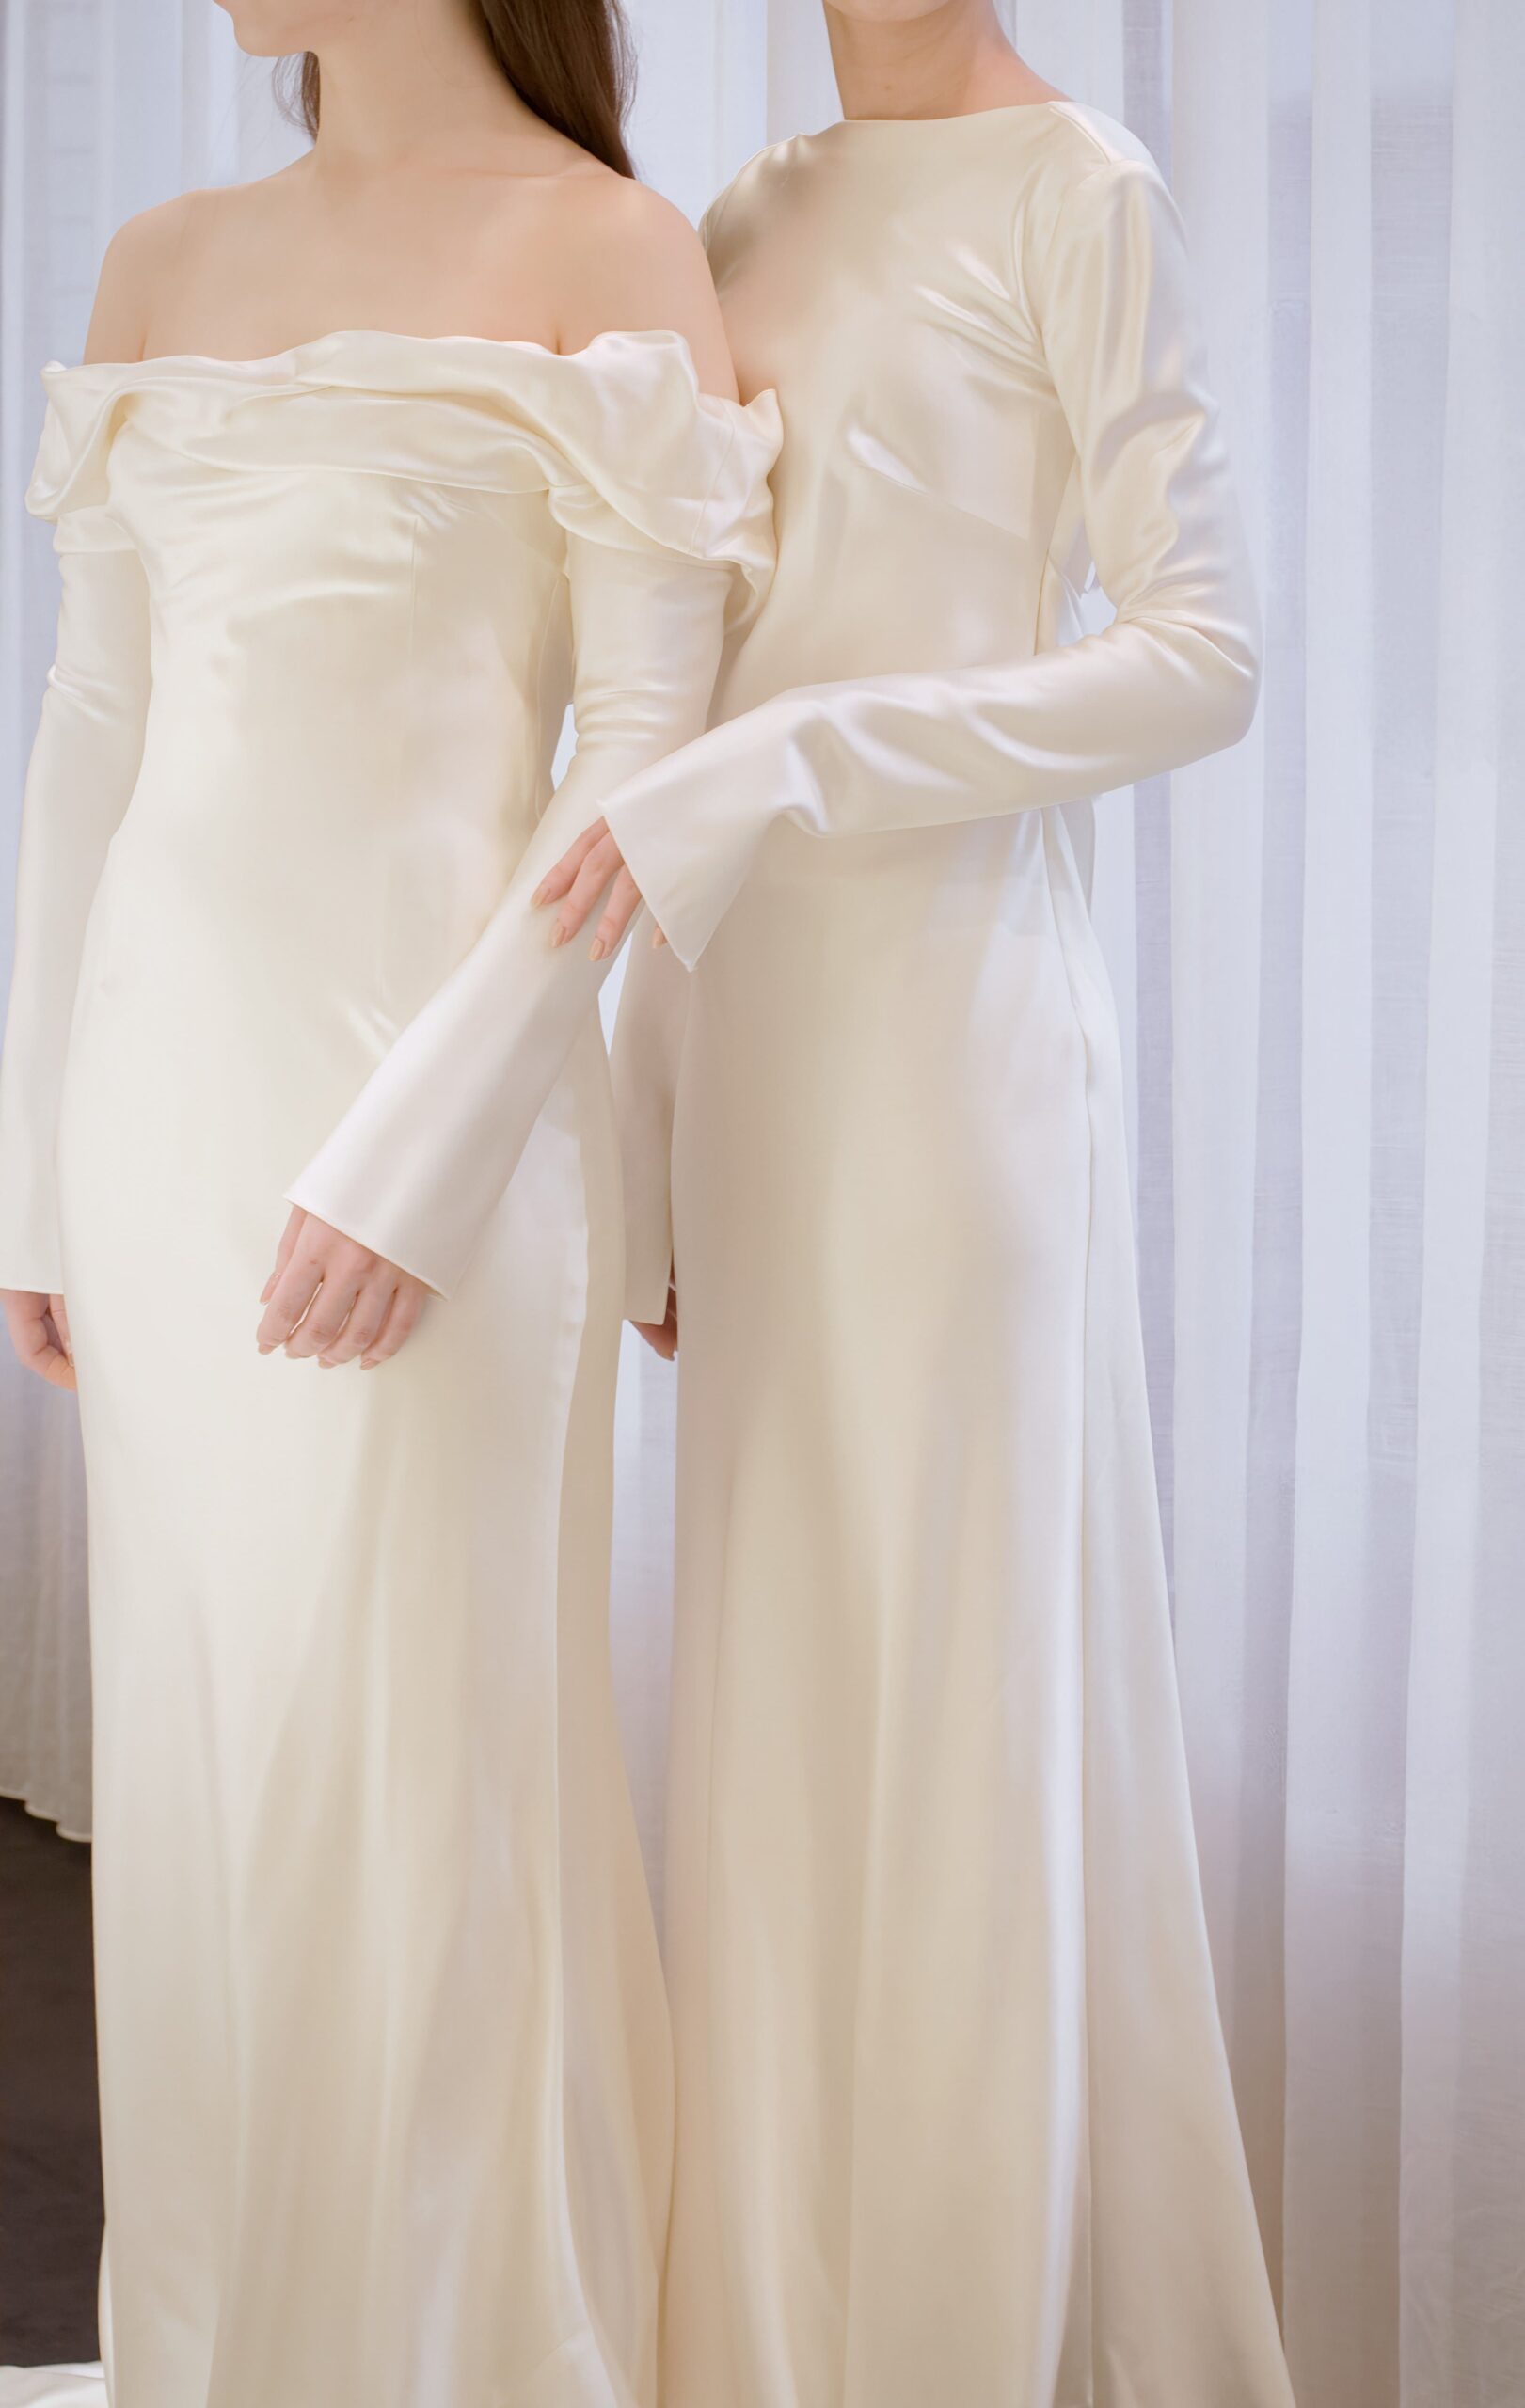 オフショルダーとロングスリーブのスレンダーラインが魅力的なダニエルフランケルのウェディングドレスは、VERA WANG BRIDEで経験を積んだデザイナーらしいシンプルで洗練されたデザインです